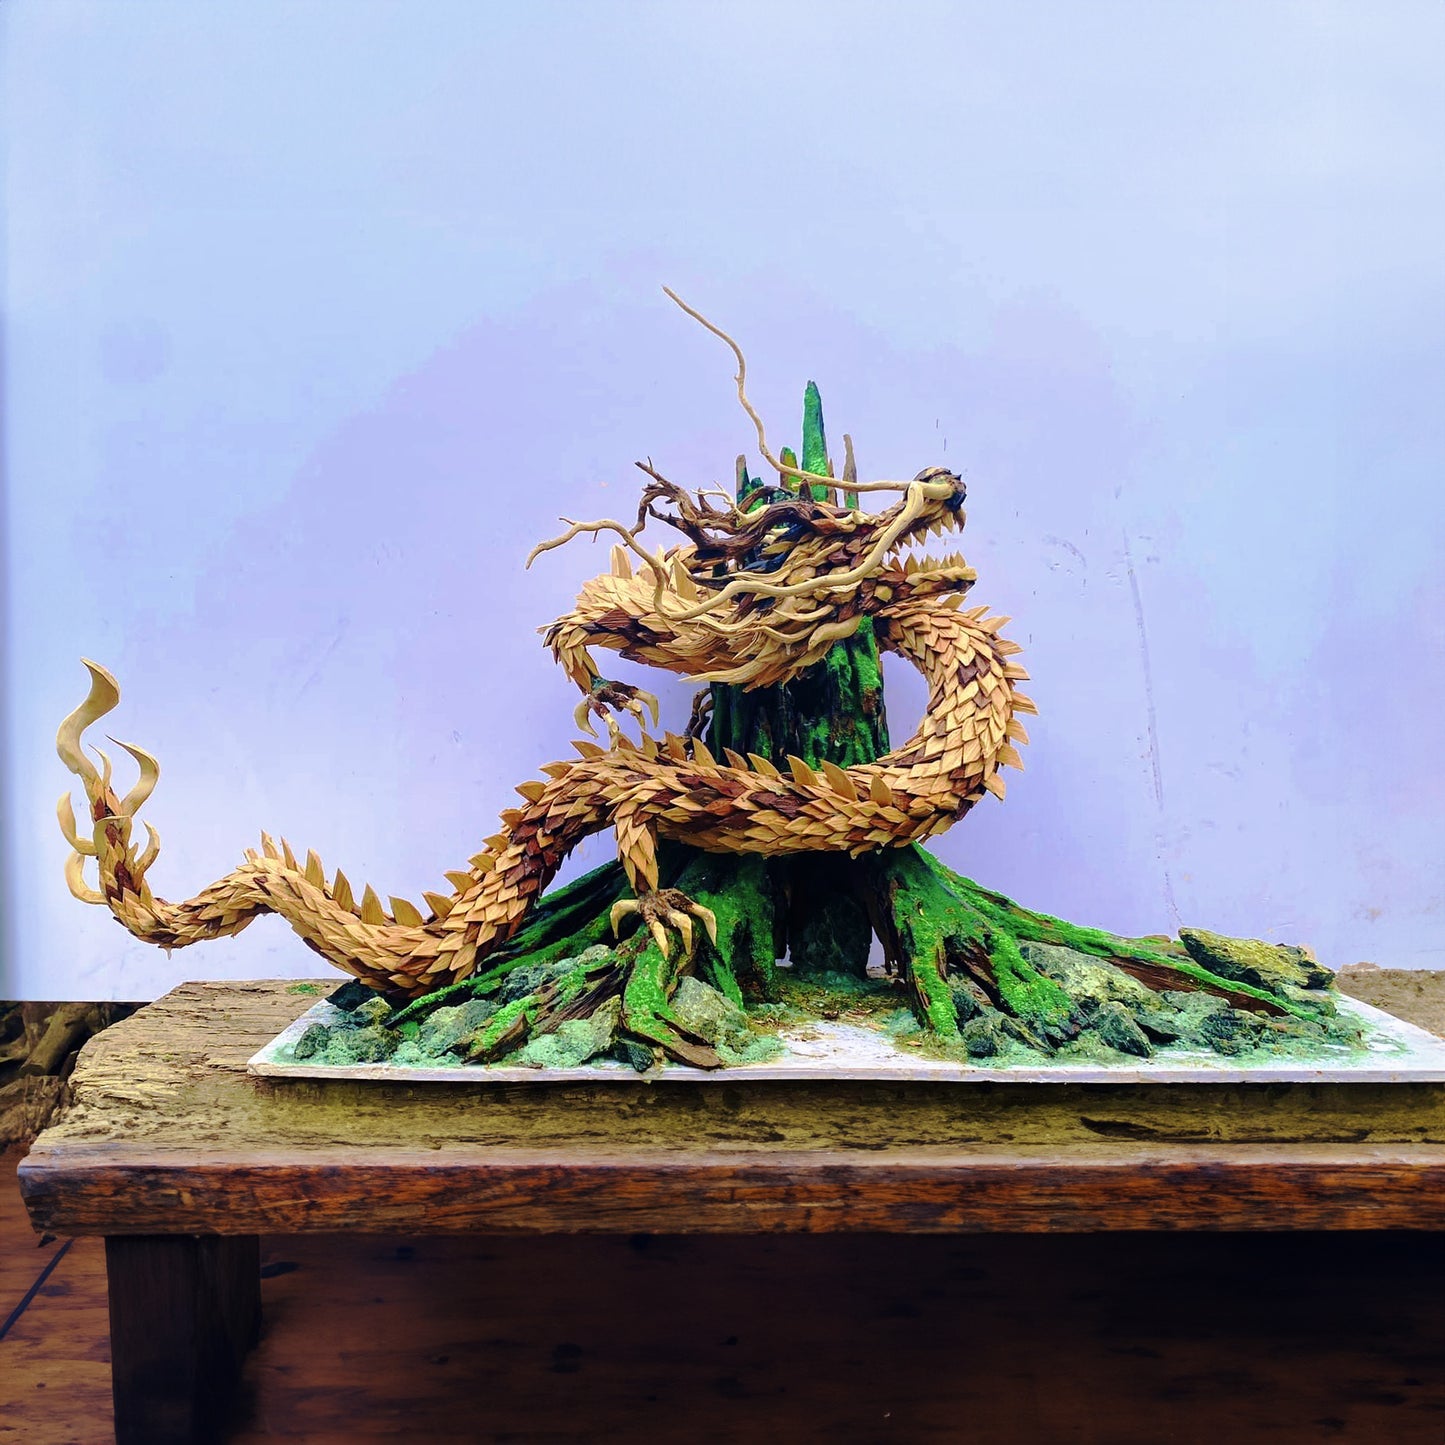 Driftwood aquarium dragon statue sculptures aquascape large driftwood stump art